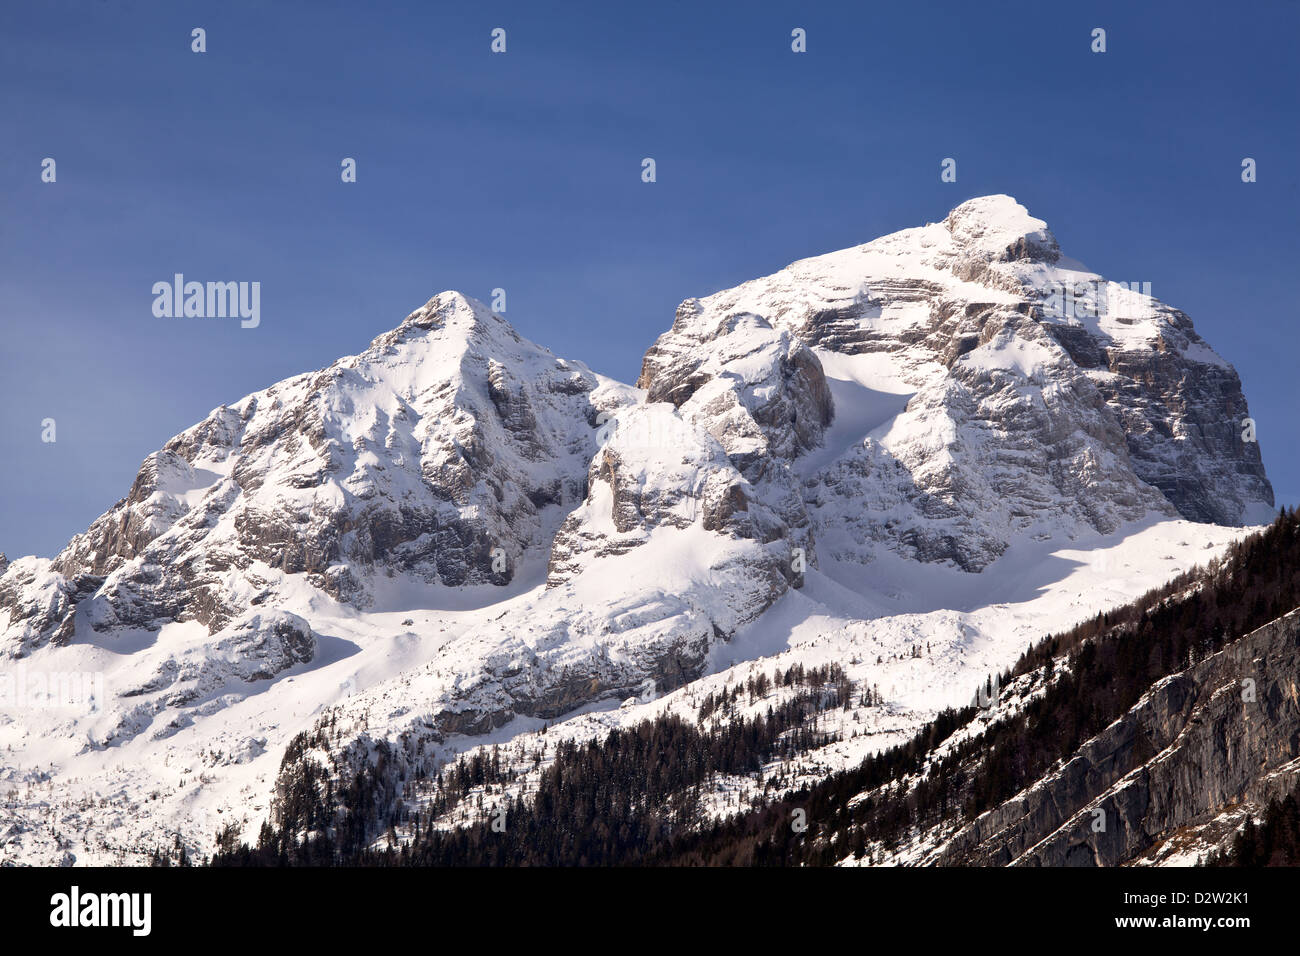 Montagna Jalovec in condizioni invernali con molta neve. Jalovec è una montagna nelle Alpi Giulie con un'altitudine di 2,645 m. Foto Stock